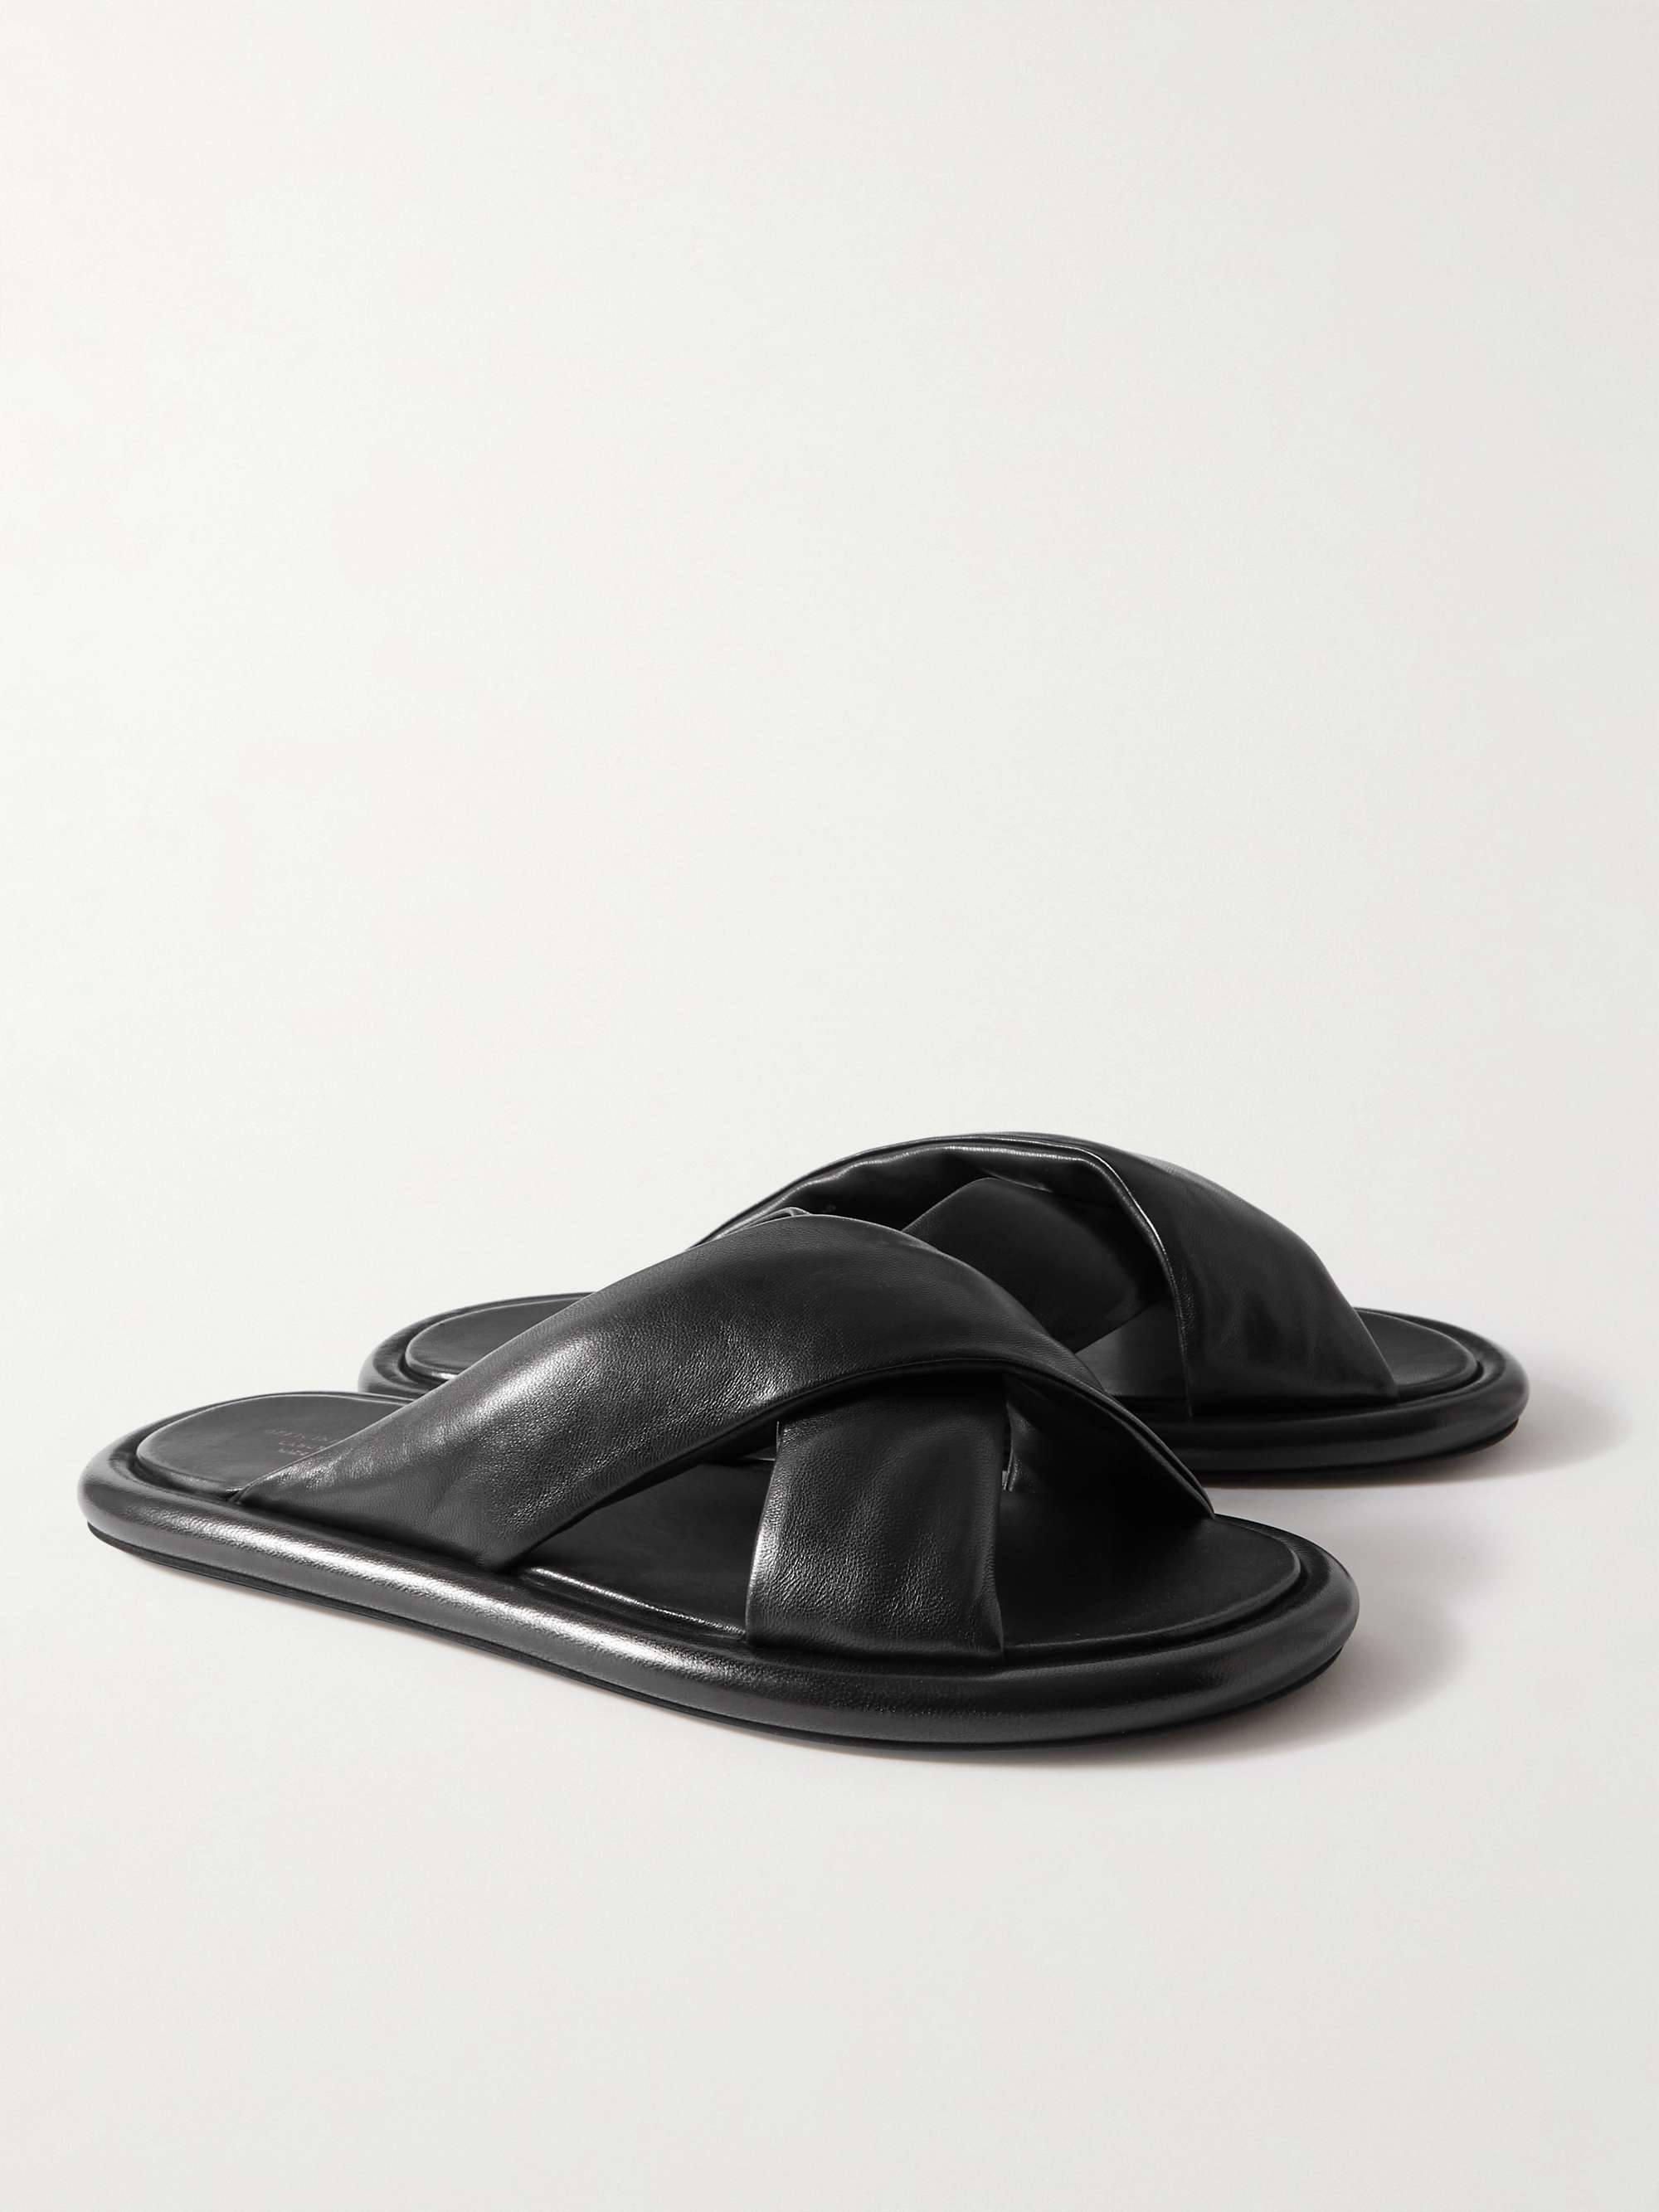 OFFICINE CREATIVE Estens Leather Sandals for Men | MR PORTER